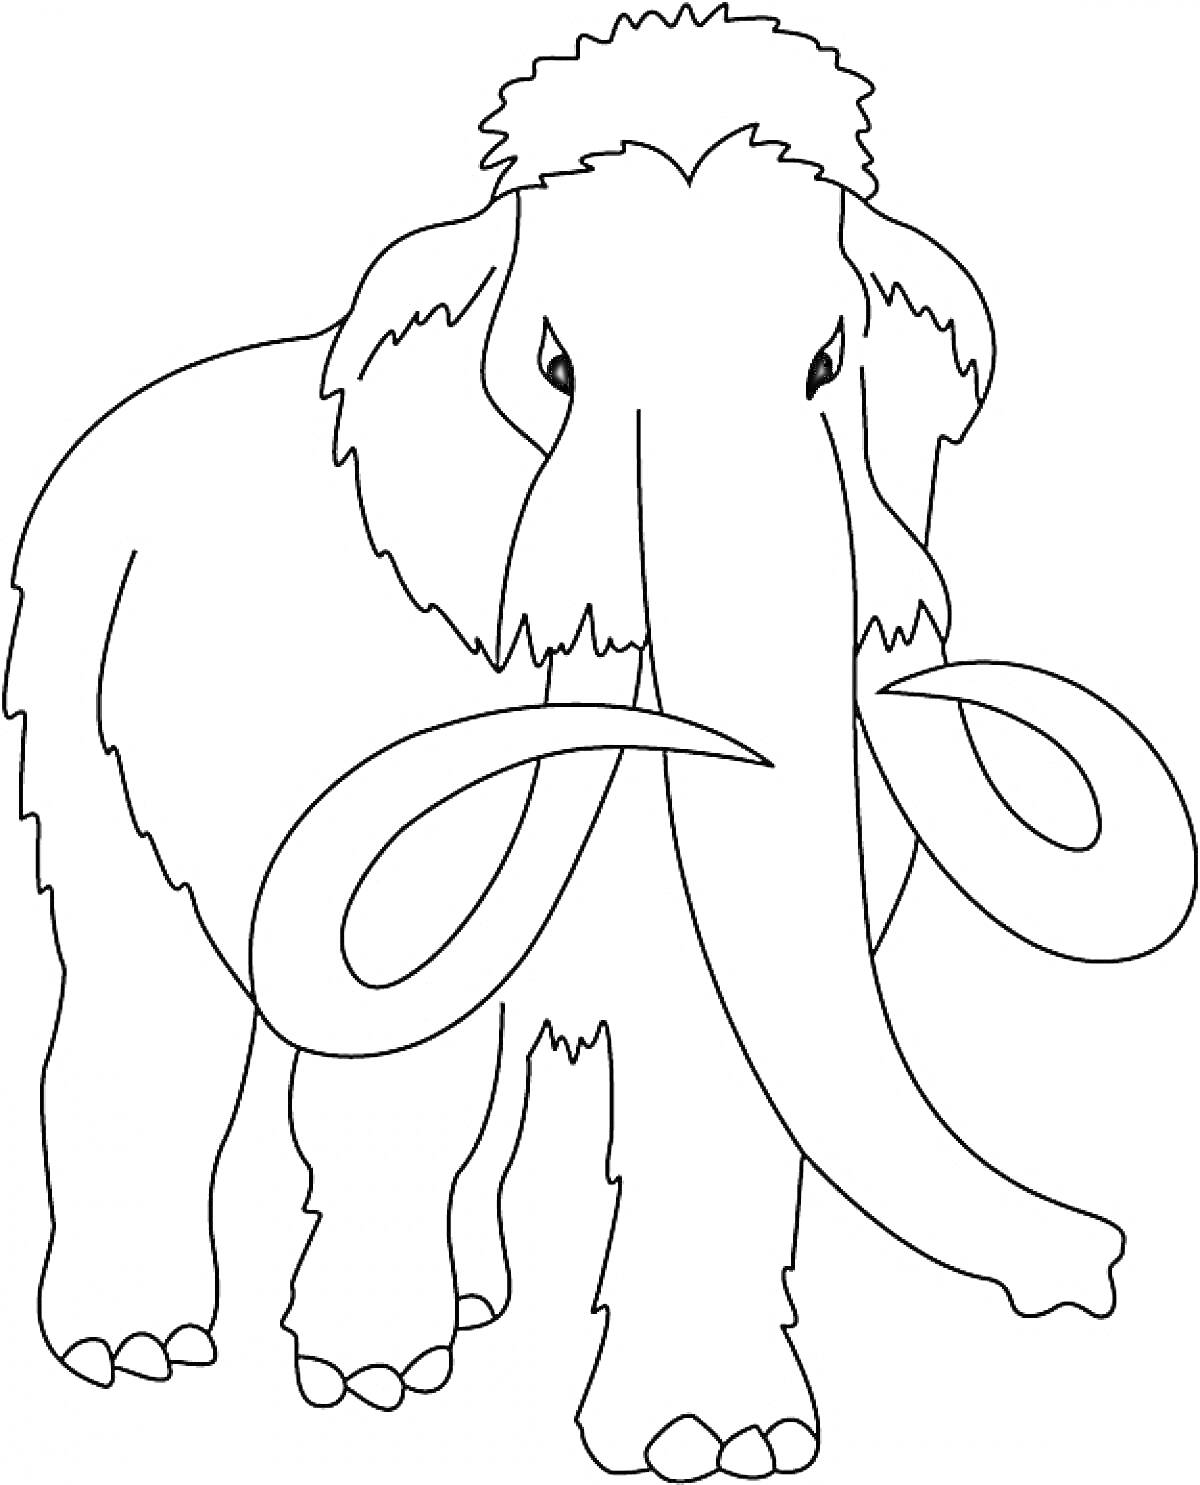 Раскраска с изображением мамонта